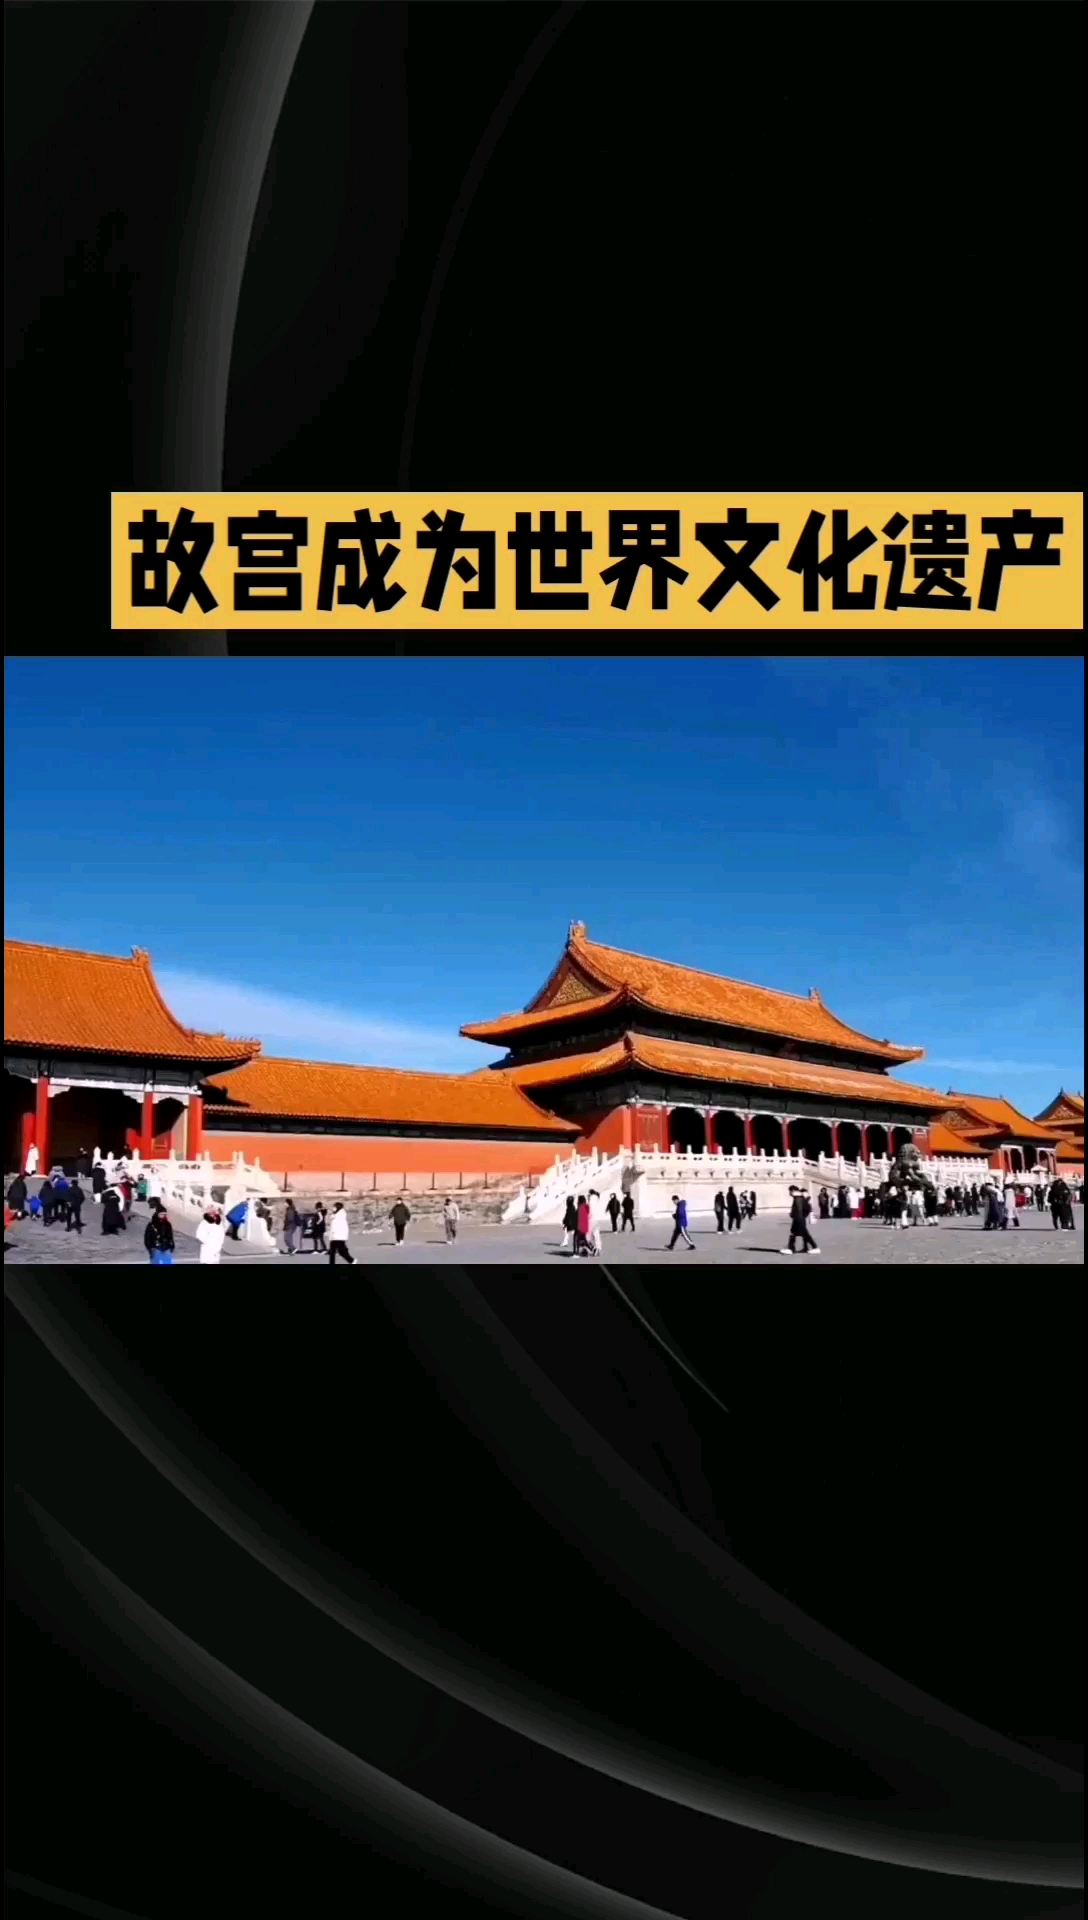 故宫位于北京市中心，是中国古代宫殿建筑的典范